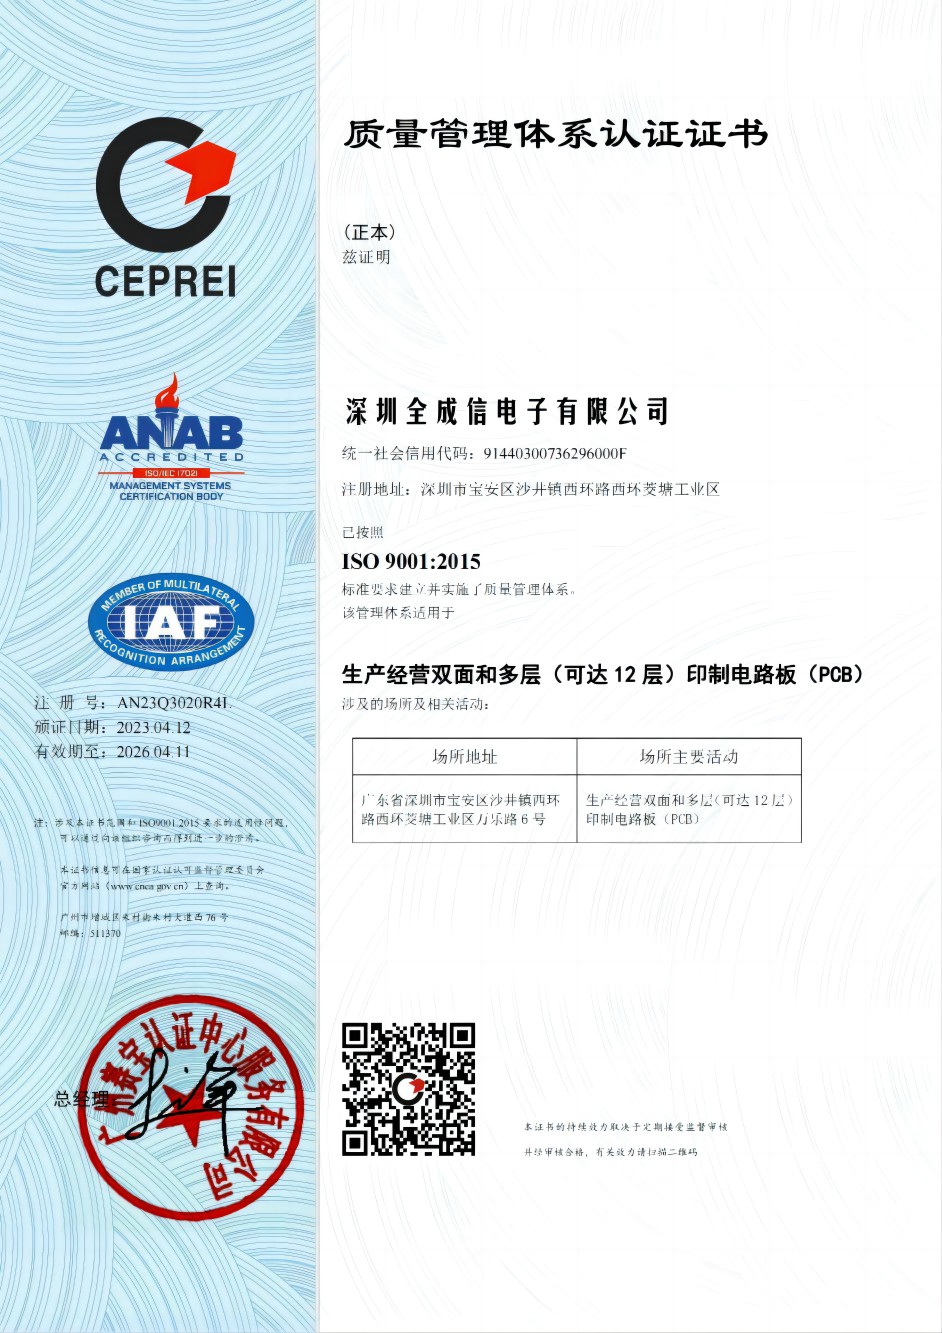 ISO9001-2015.jpg